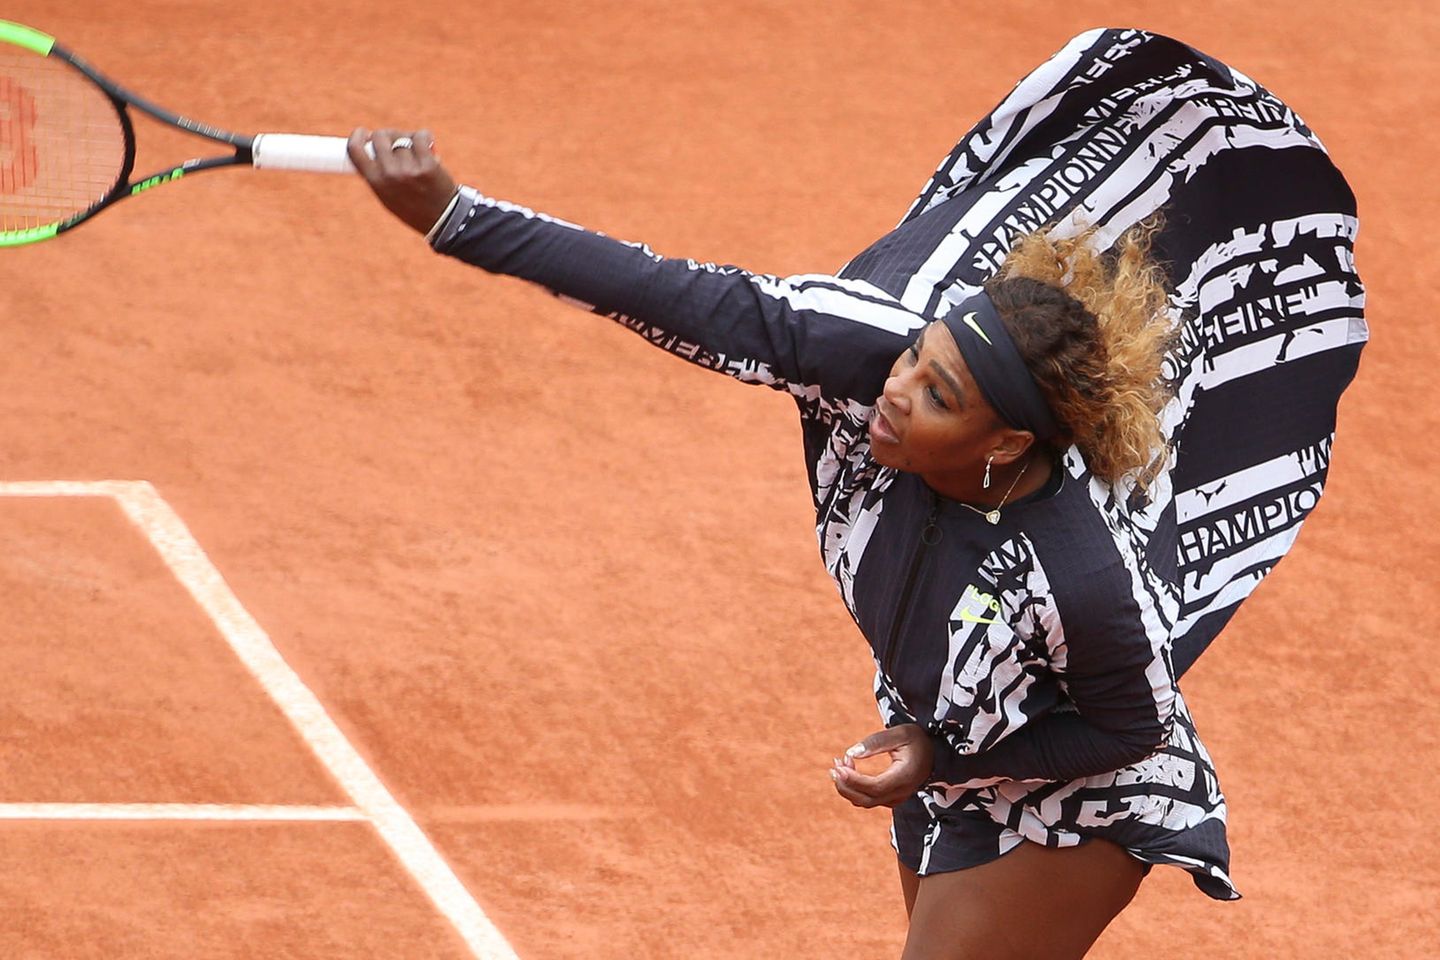 Championne, Reine, Mere - auf dem Outfit von Serena Williams liest man die französischen Worte für Champion, Königin und Mutter.